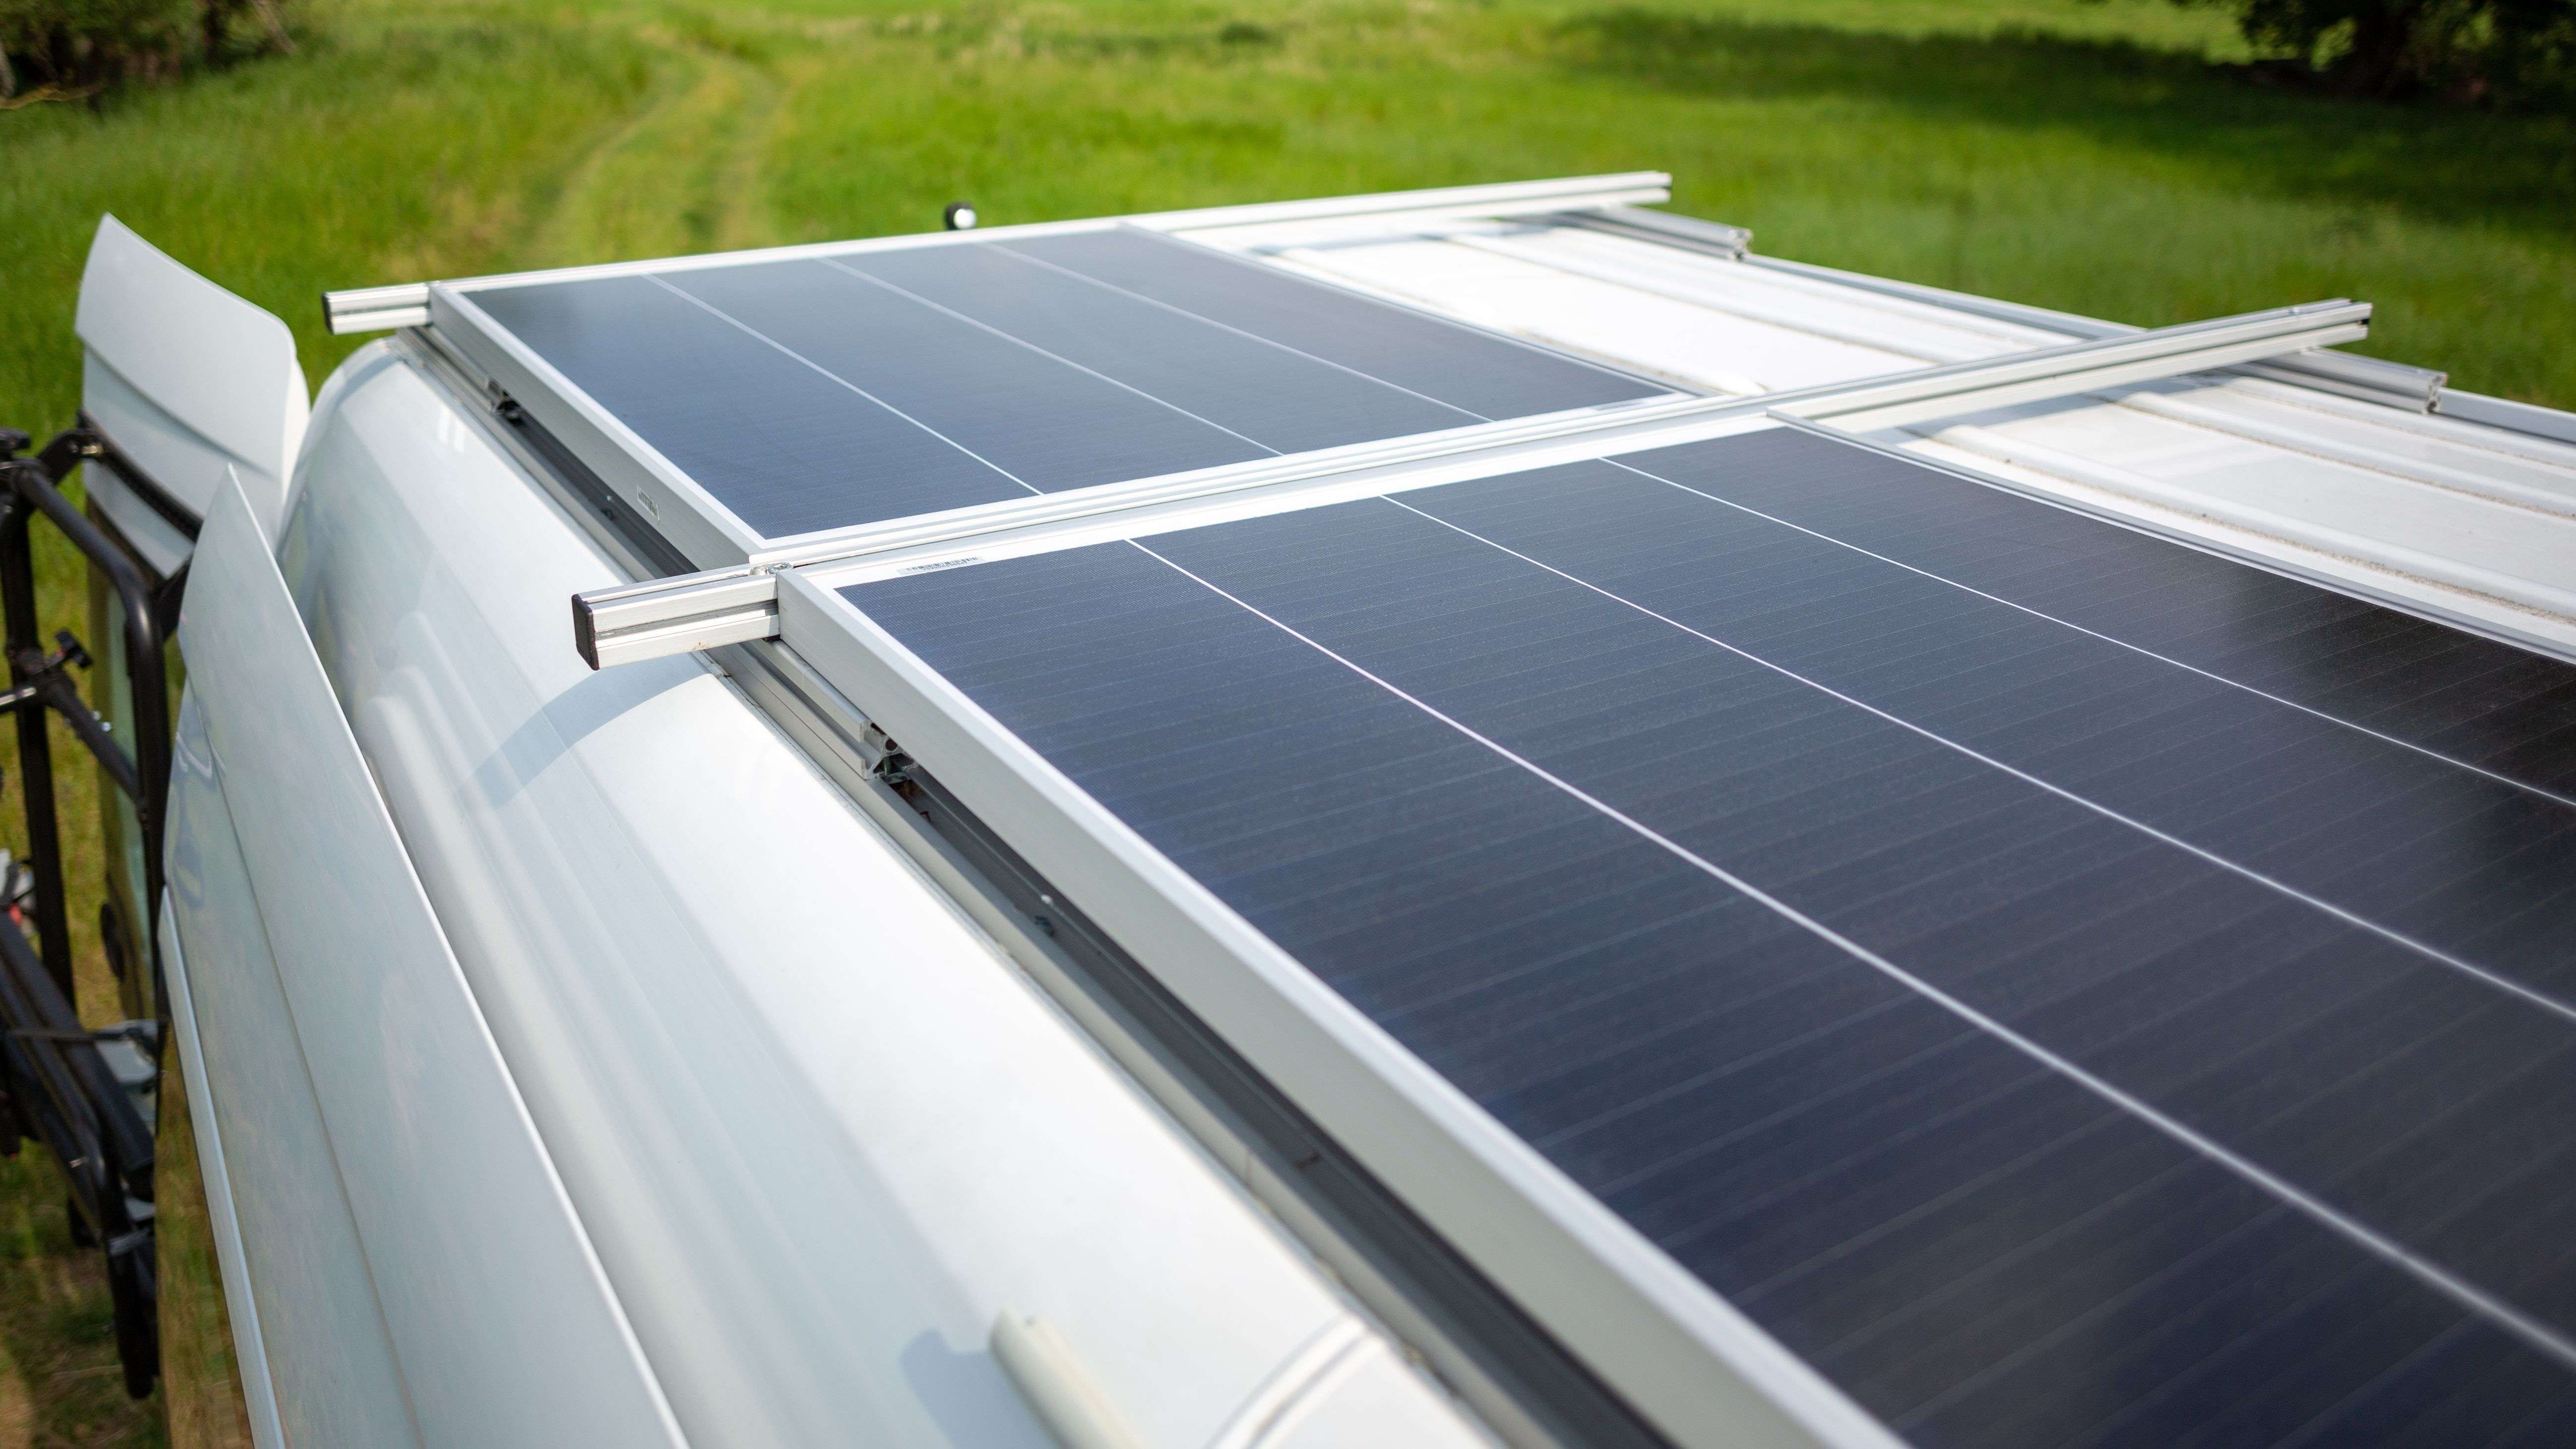 Comment installer un panneau solaire sur un camping car ? 